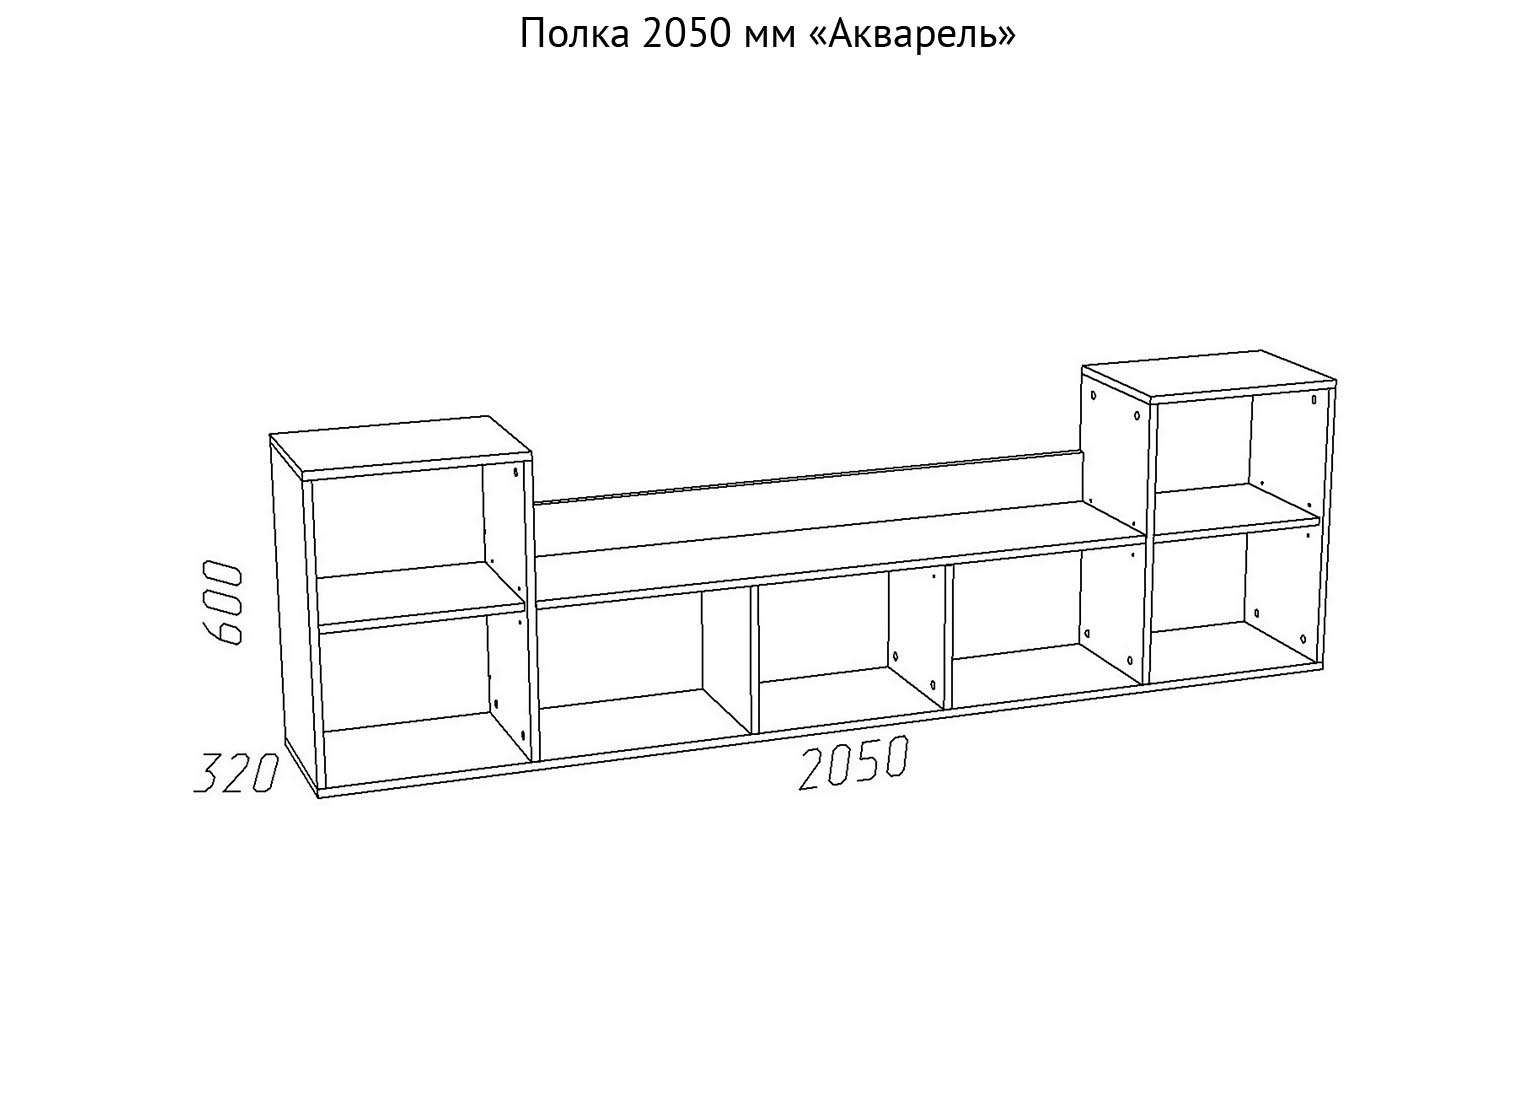 НМ 011.39-01 Полка 2050 мм Акварель схема Мебель Краснодар